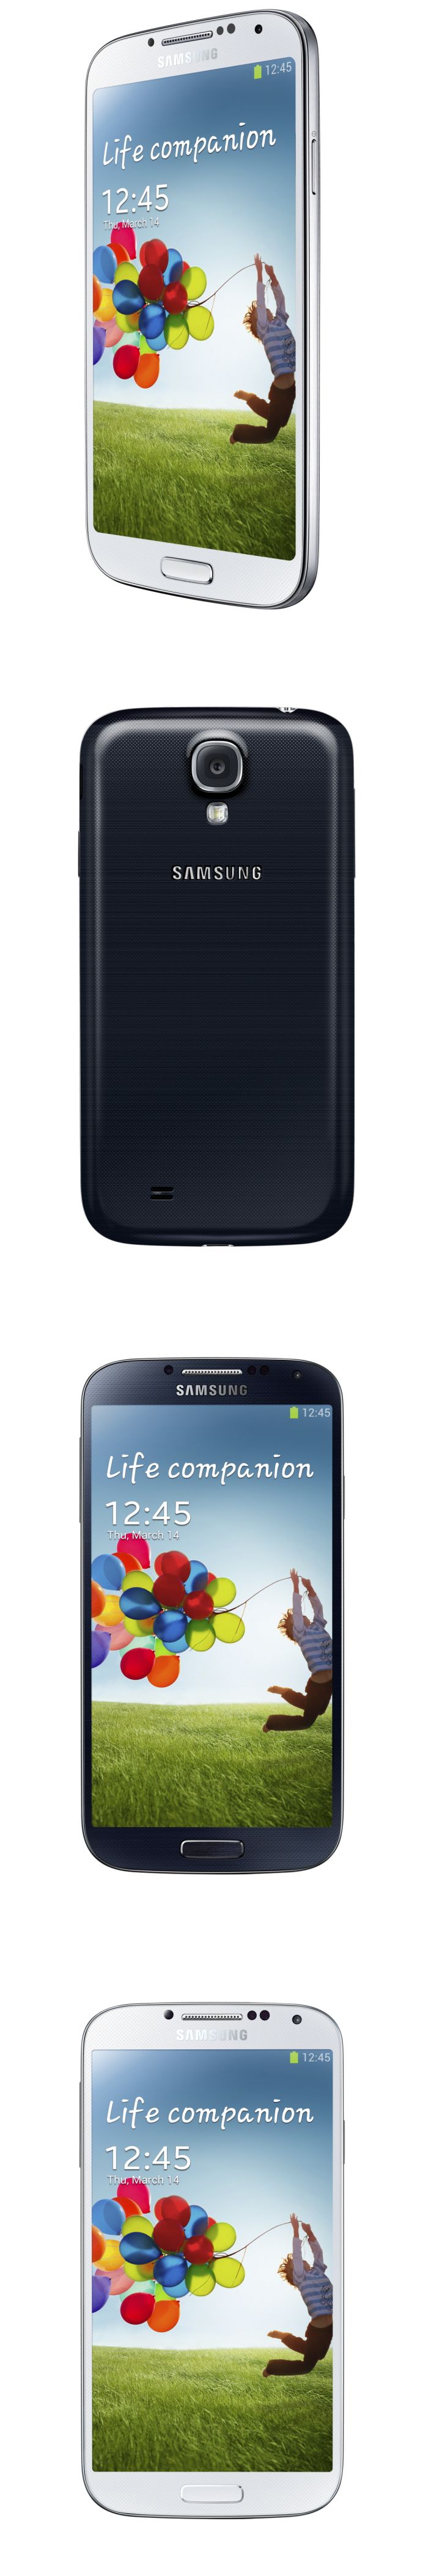 Samsung Galaxy S IV: 8 mag, full HD, szemmel görgetés